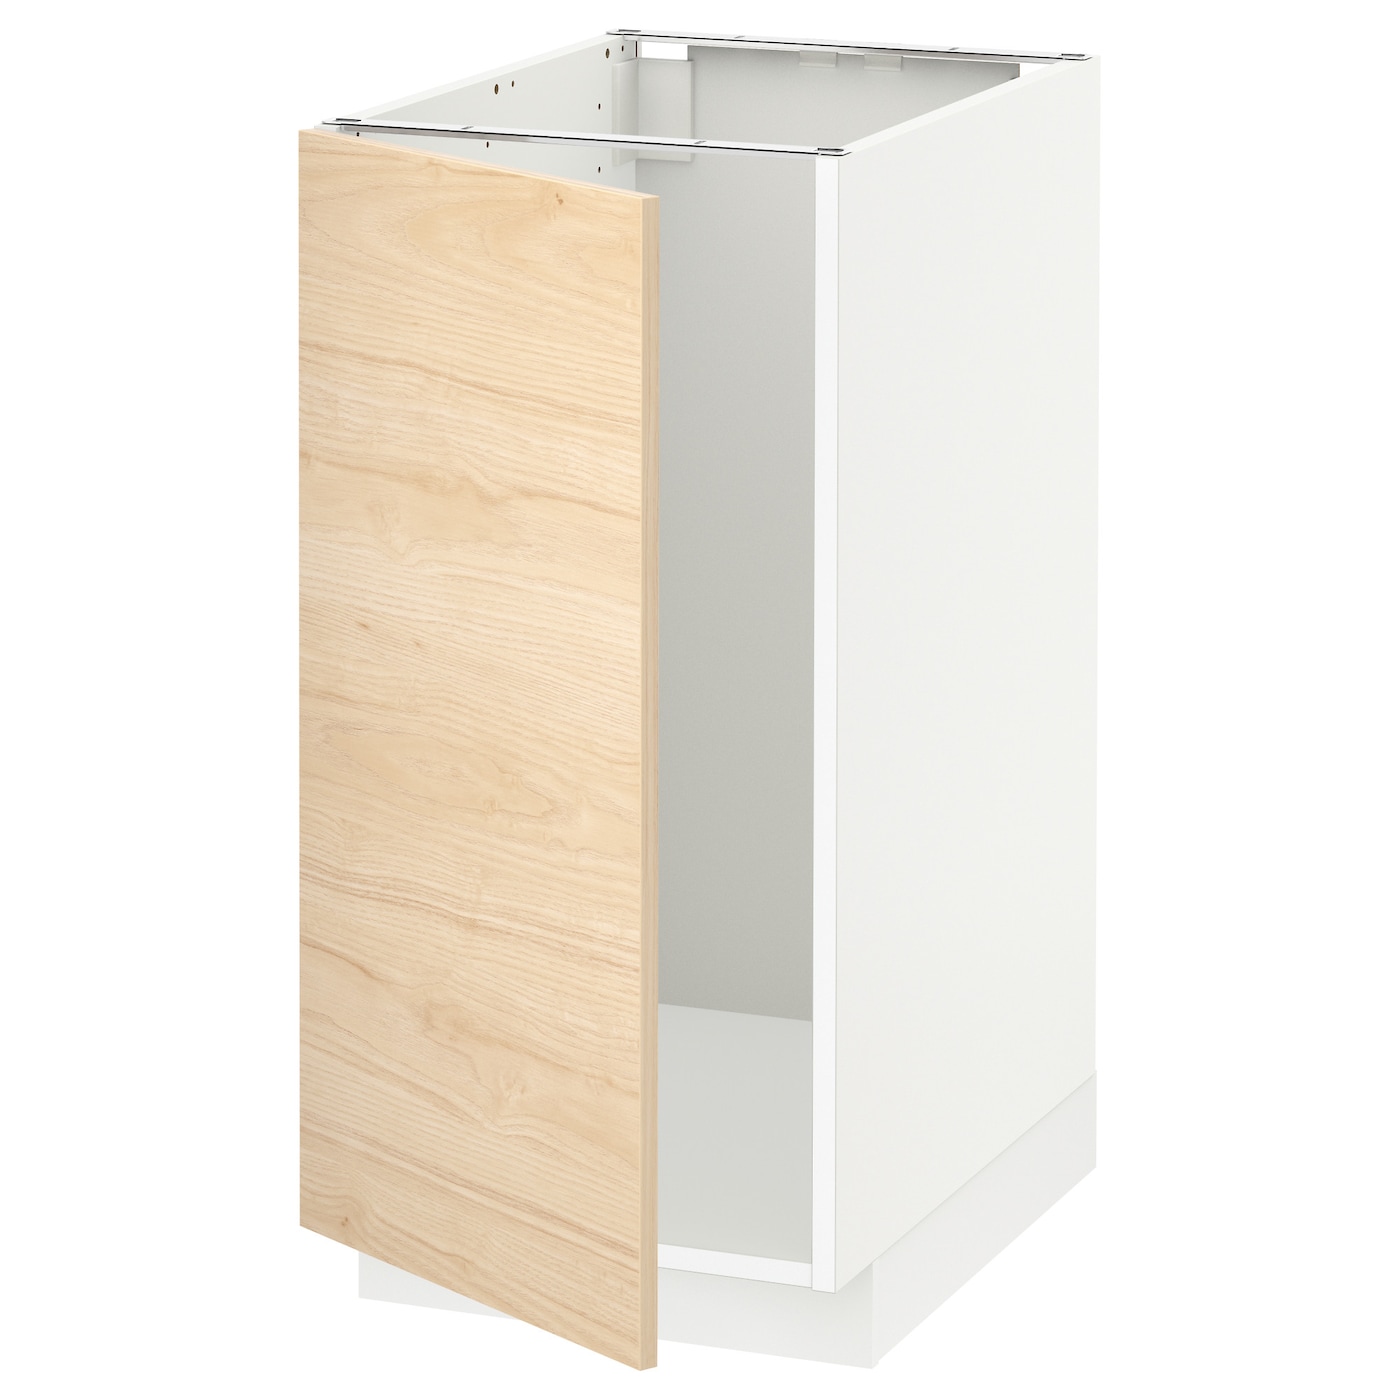 Напольный шкаф - IKEA METOD, 88x62x40см, белый/светлый ясень, МЕТОД ИКЕА